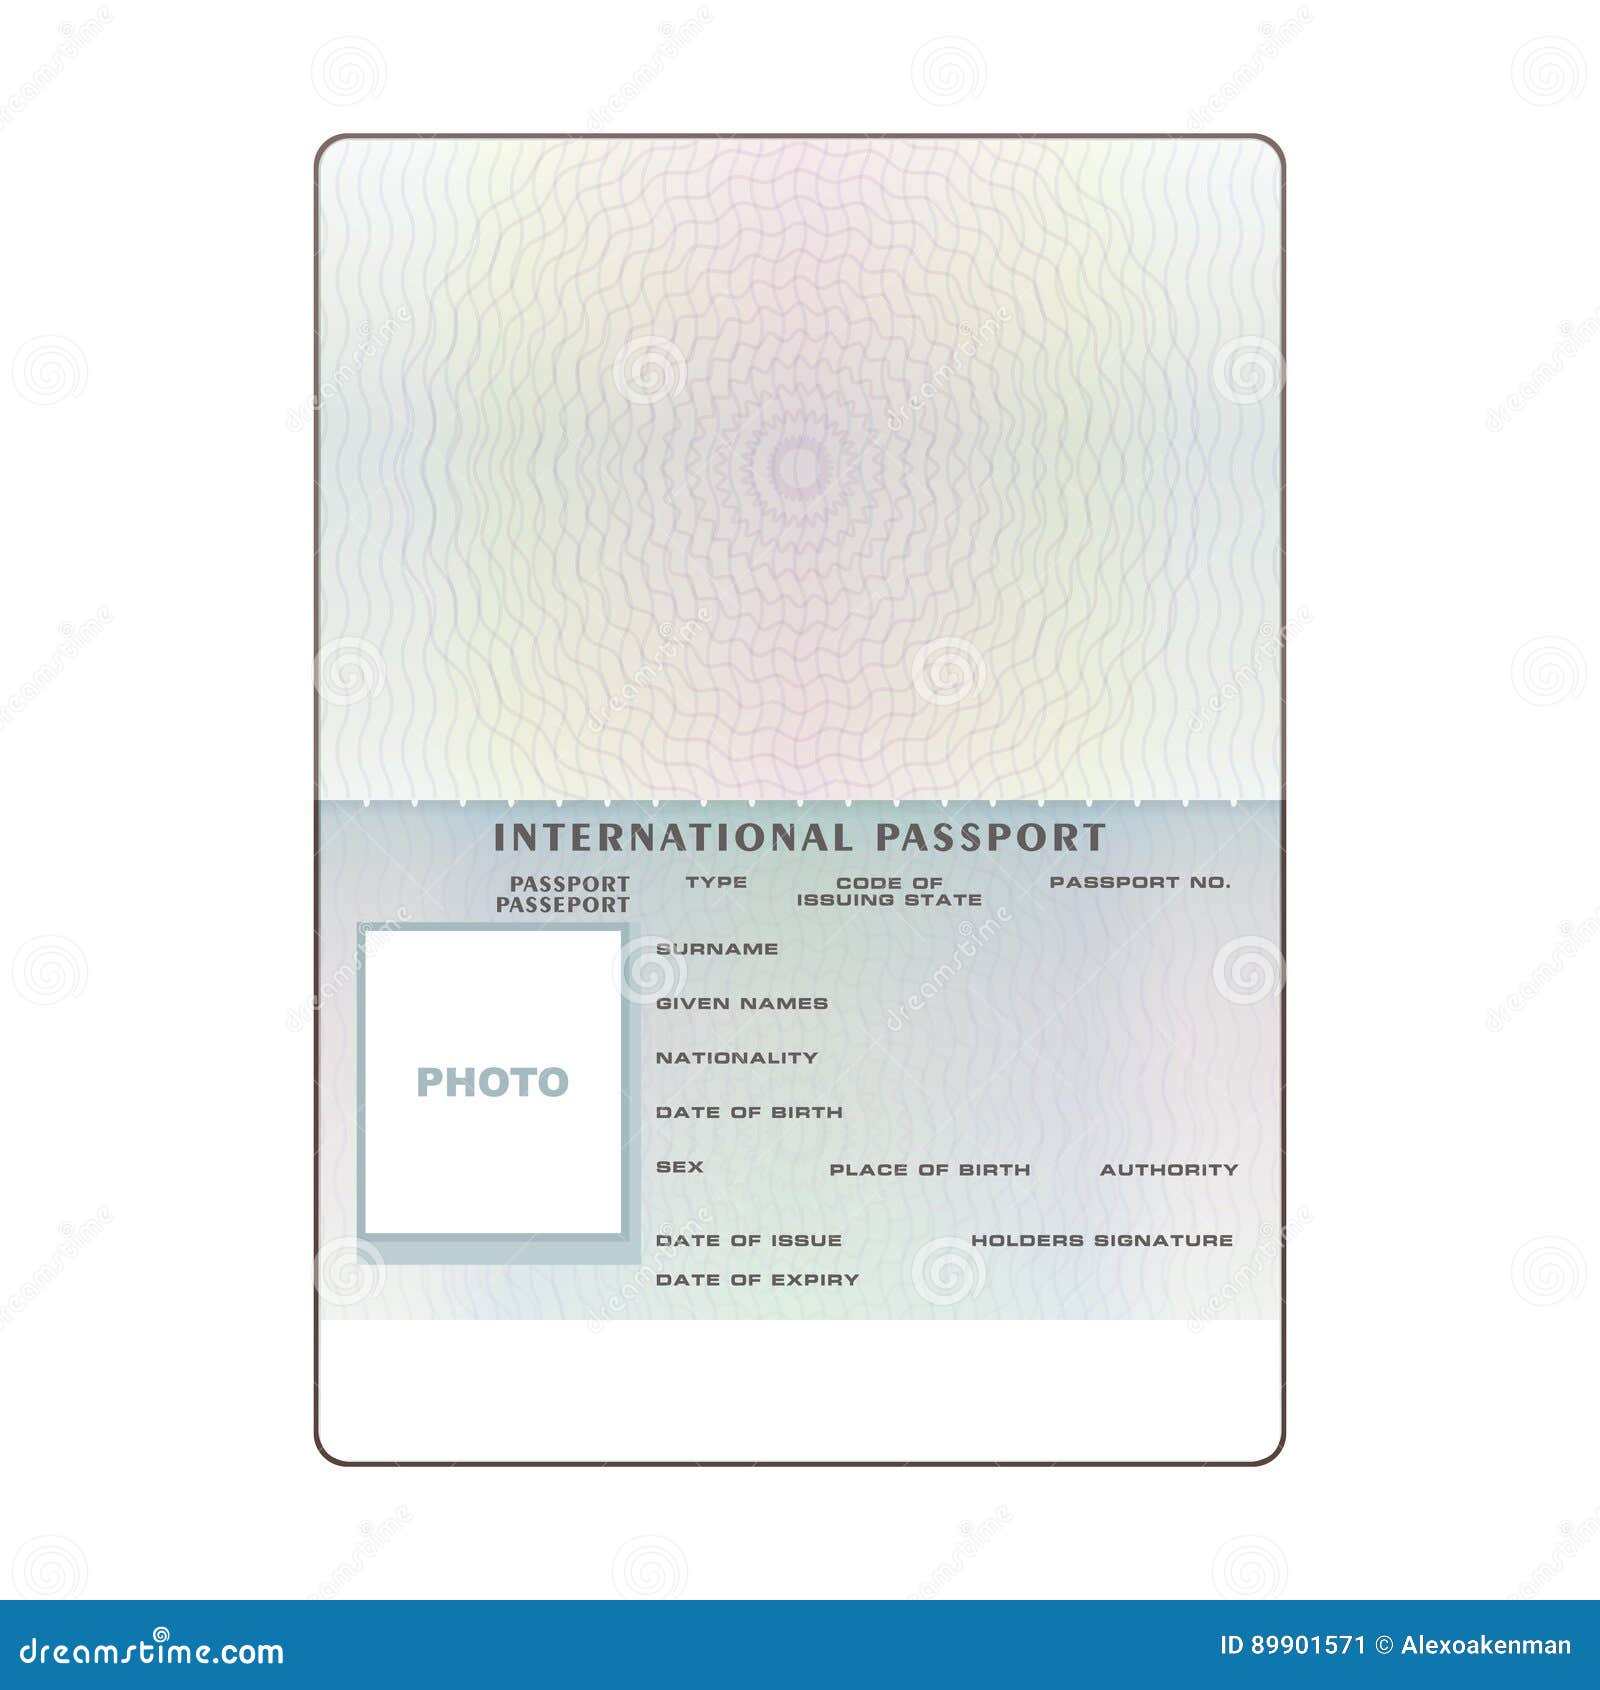  international open passport blank template